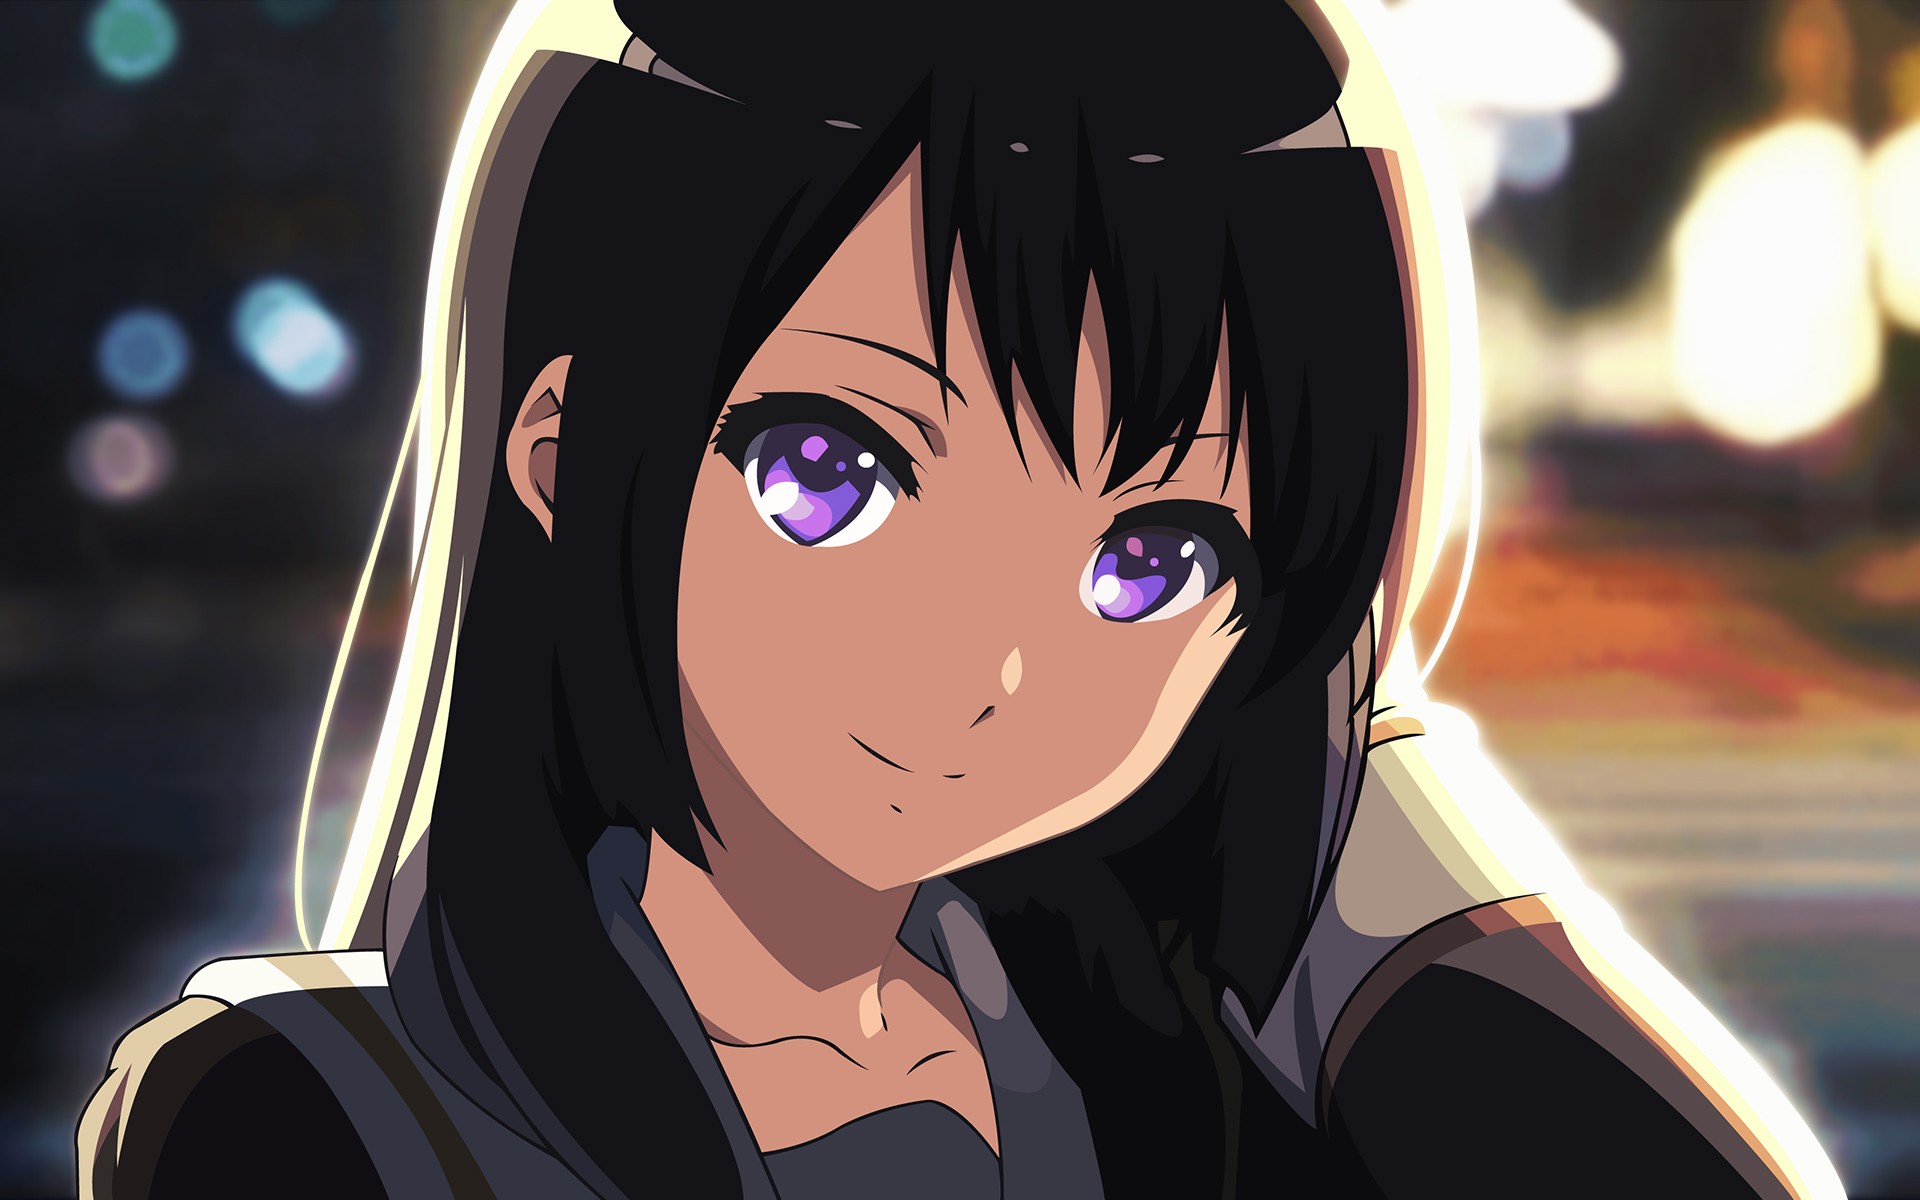 Anime 1920x1200 Hibike! Euphonium anime anime girls Kousaka Reina purple eyes black hair long hair face closeup looking at viewer smiling